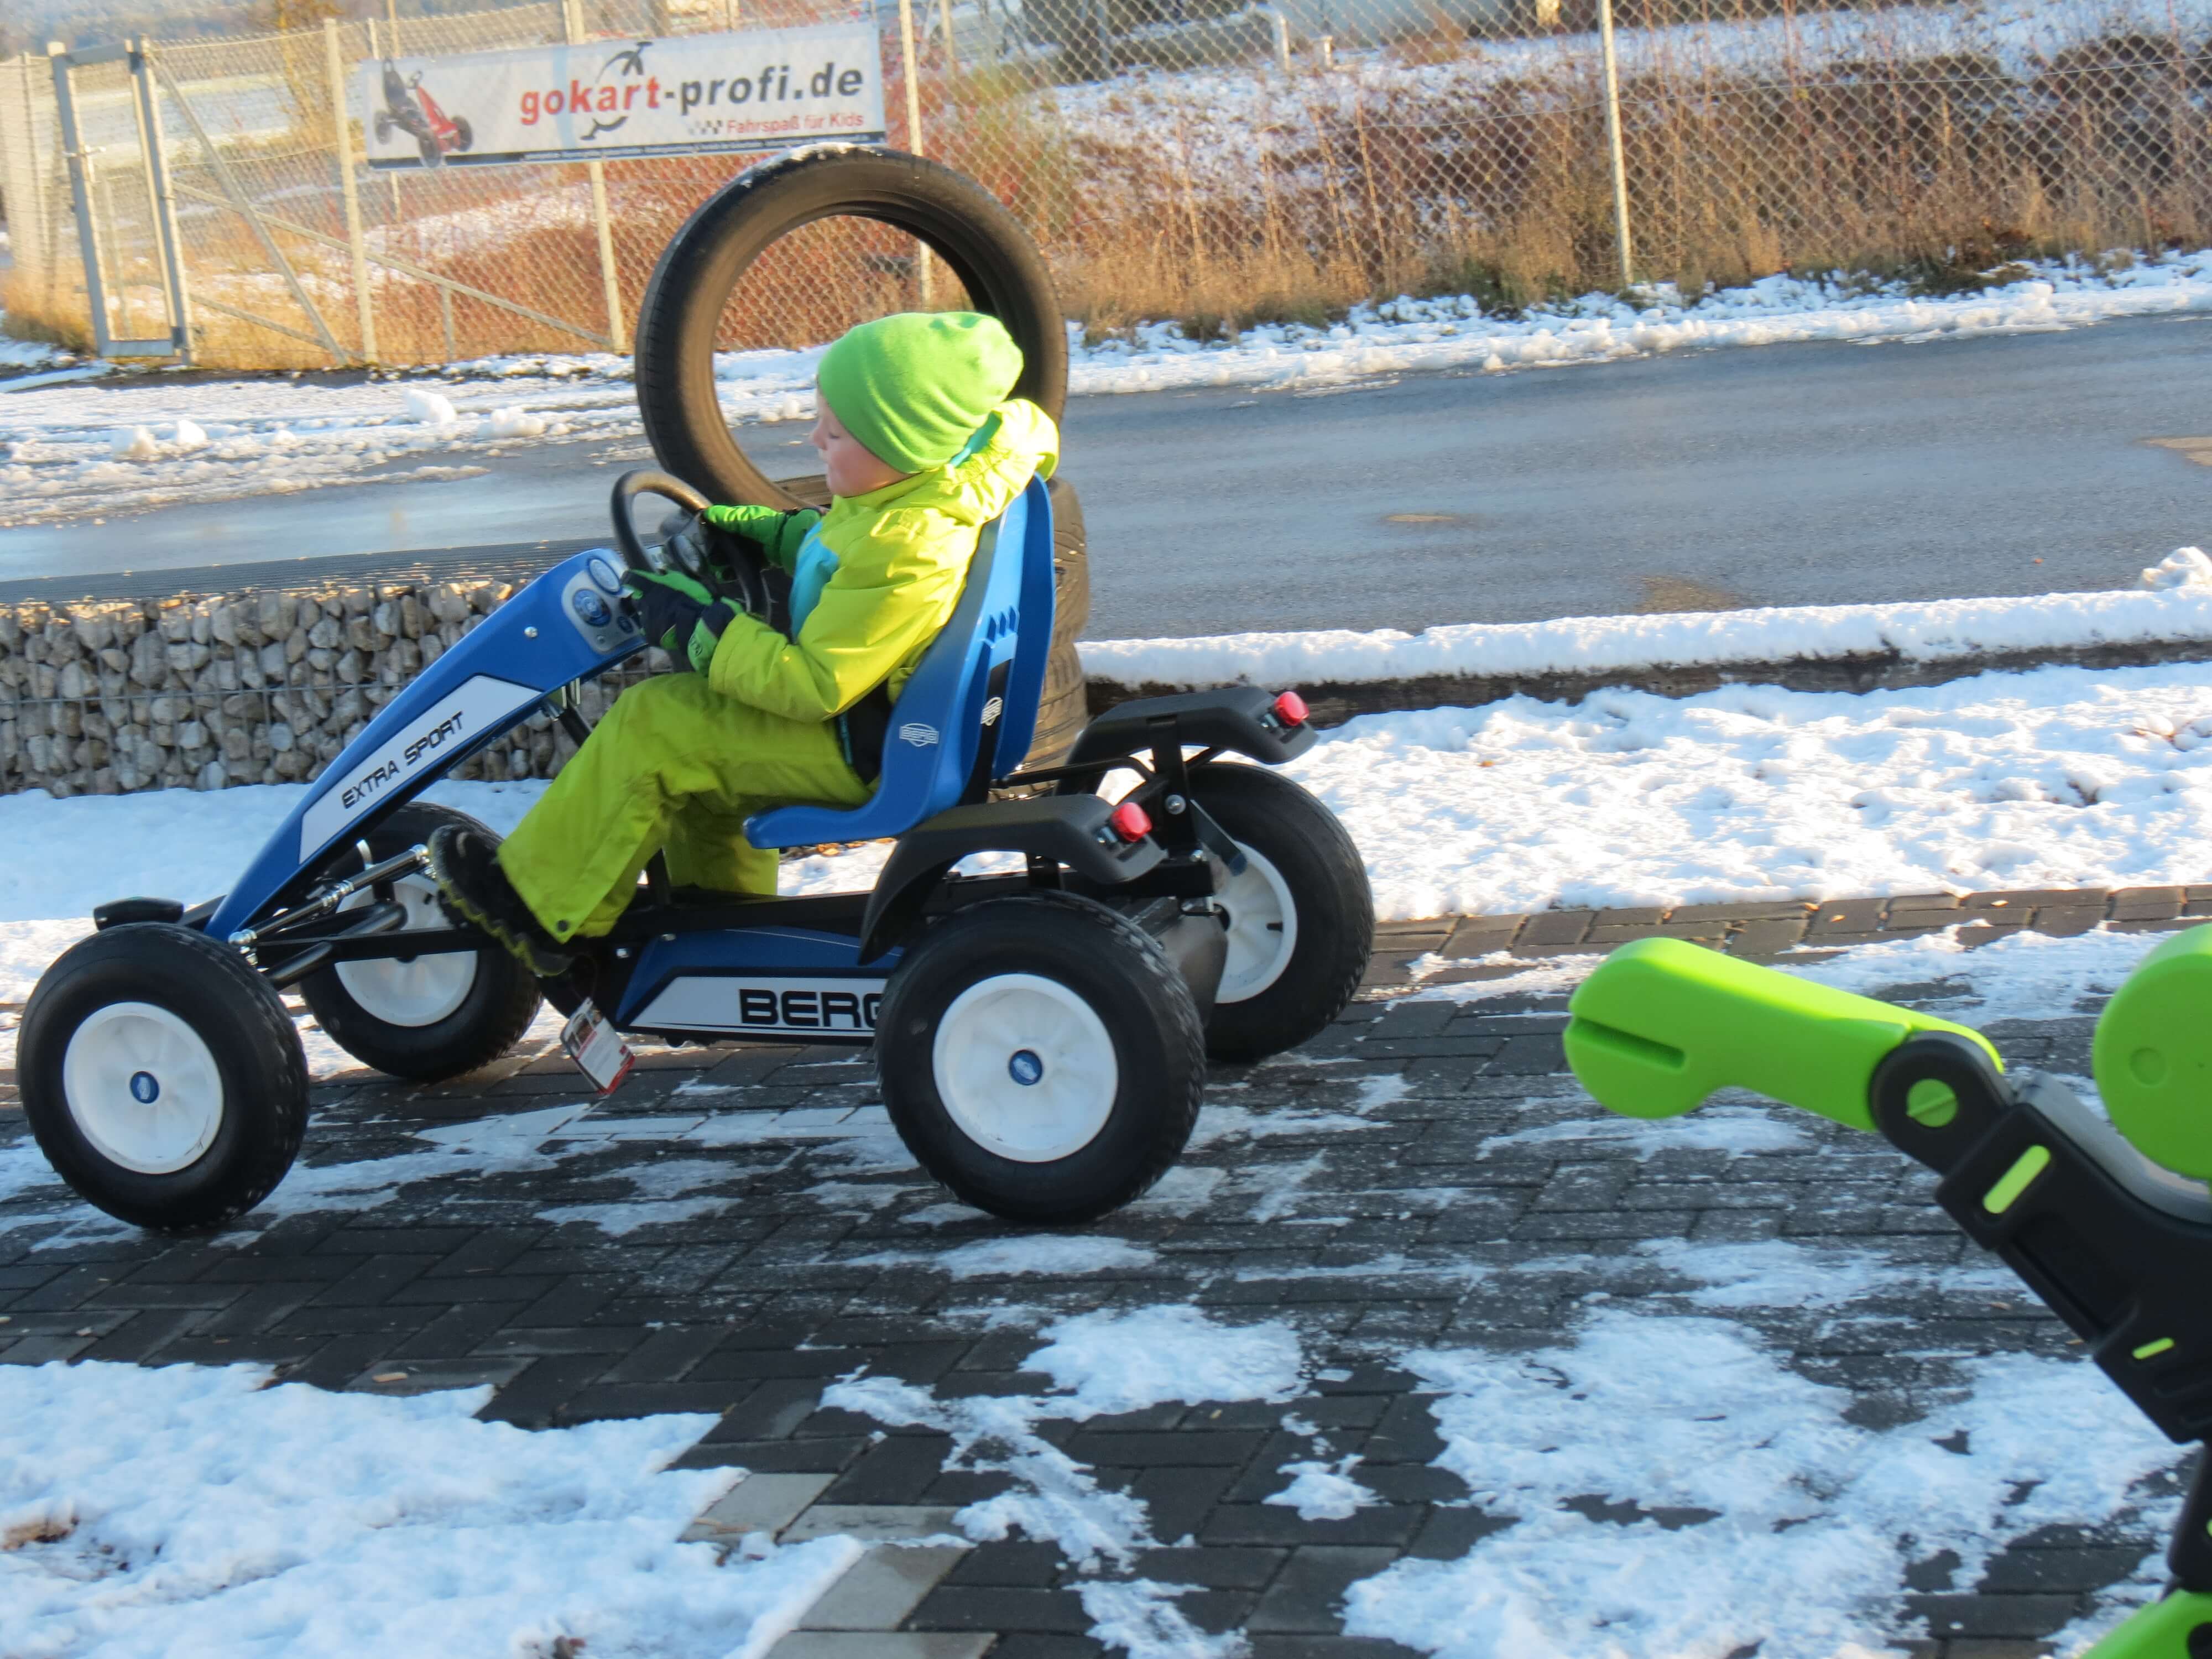 Spaß beim Kettcar Rennen auch im Schnee - gokart-profi.de - Burgthann